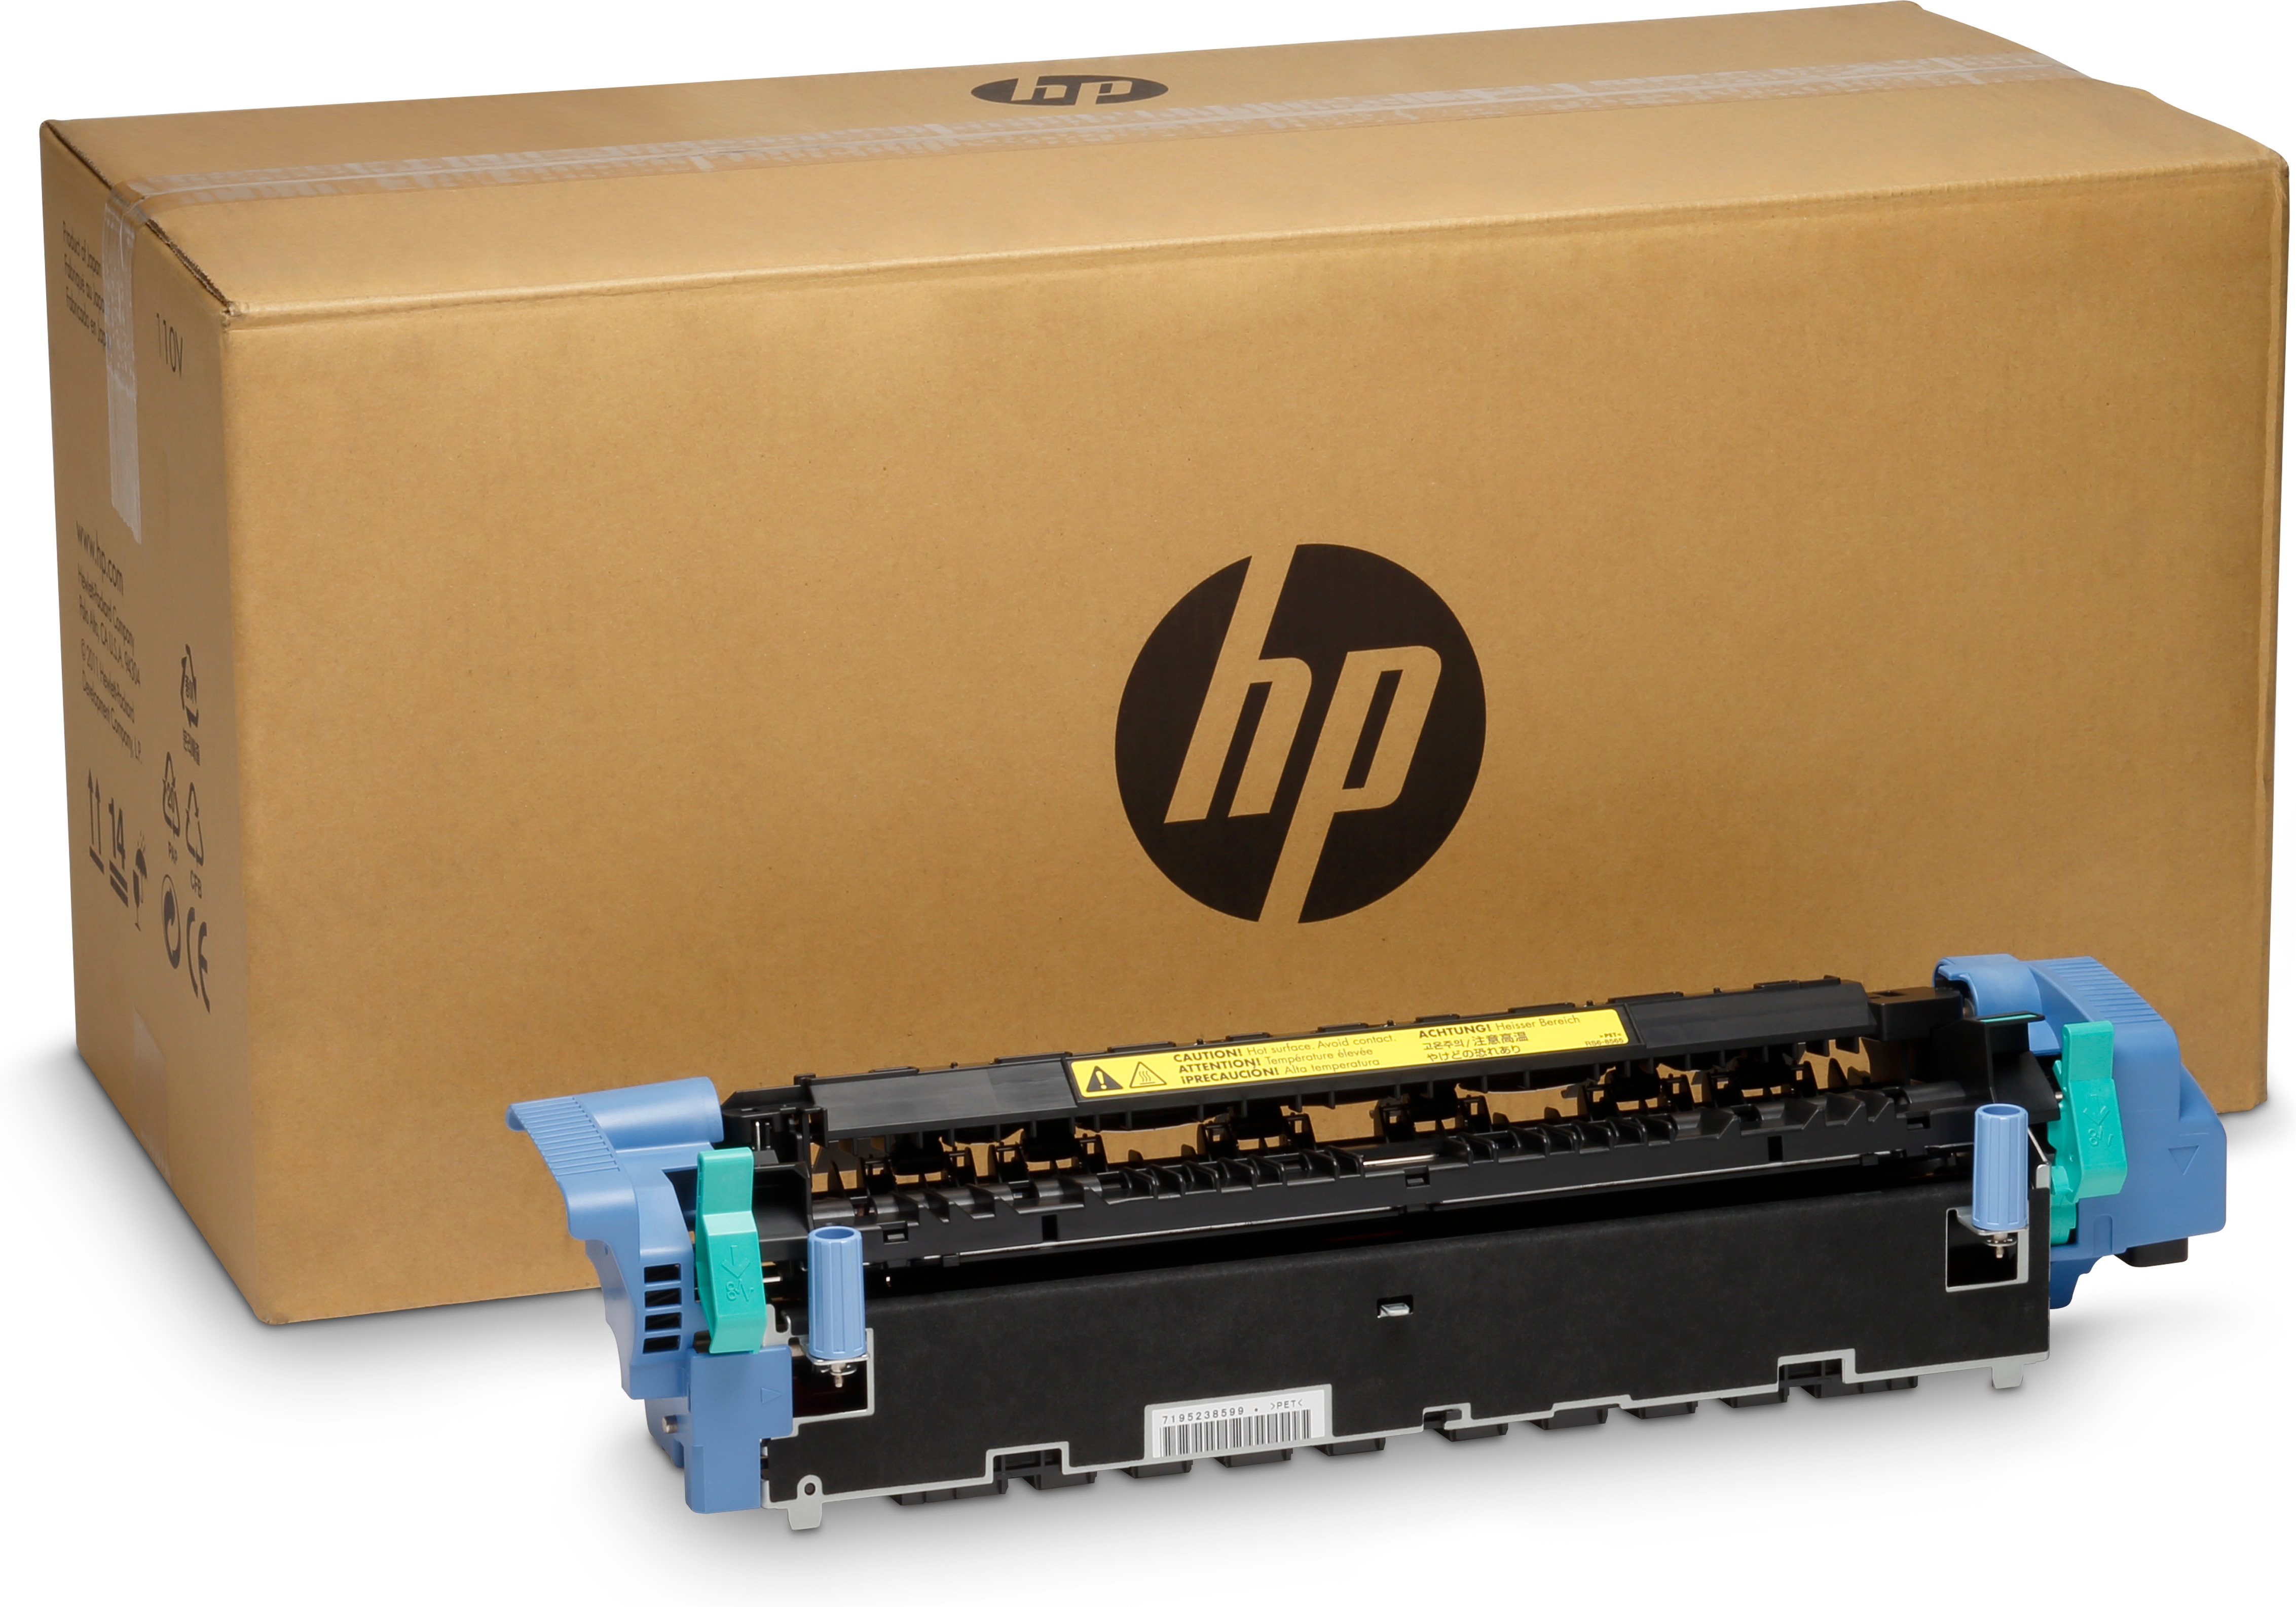 HP  (220 V) - Kit für Fixiereinheit - für Color LaserJet 5550